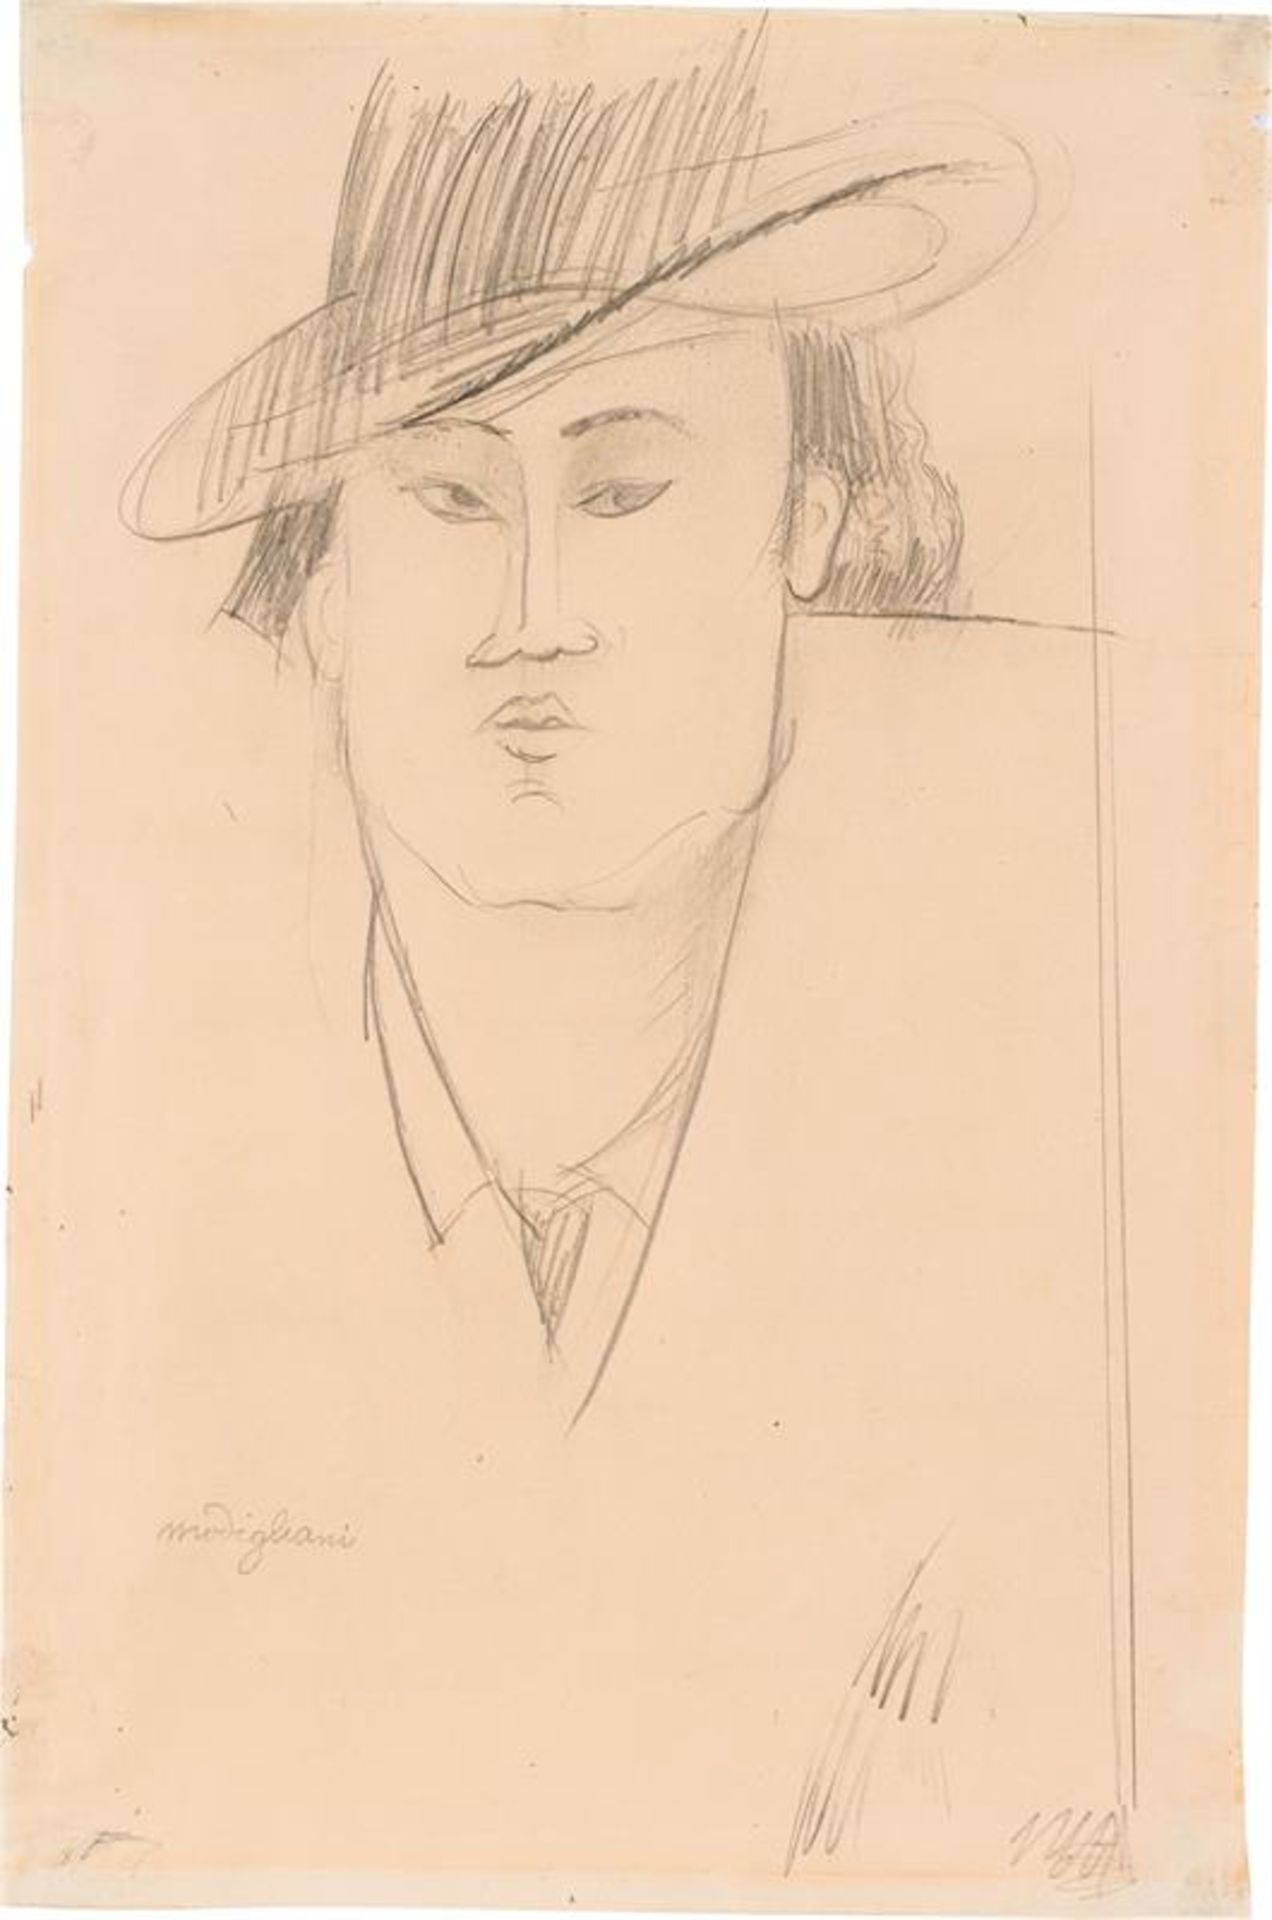  Amedeo Modigliani zugeschrieben: Porträt eines Mannes